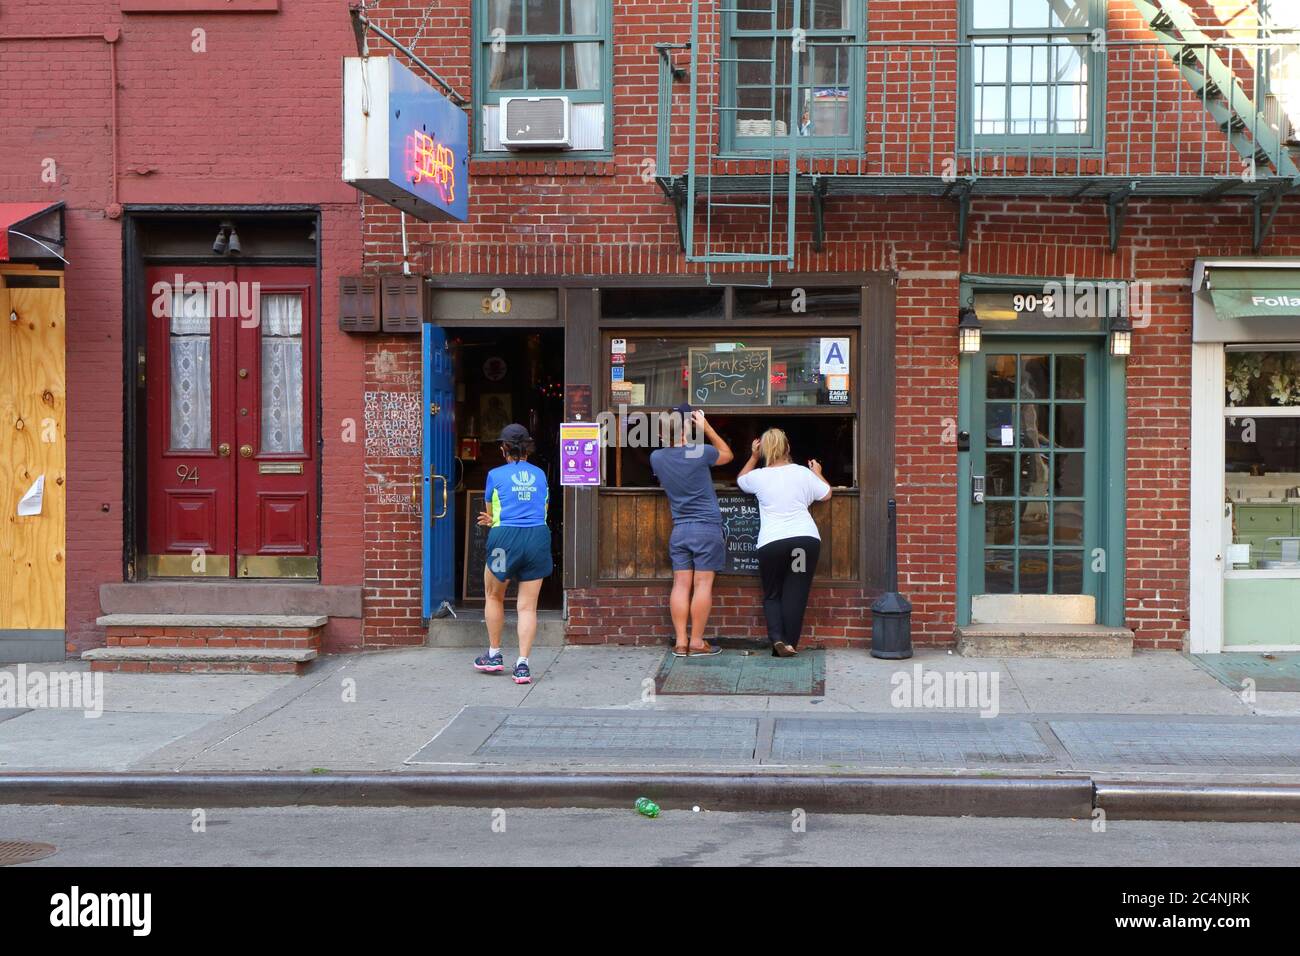 Johnny's Bar, 90 Greenwich Ave, New York, NY. Façade extérieure d'un bar dans le quartier de Greenwich Village à Manhattan. Juin 2020. Banque D'Images